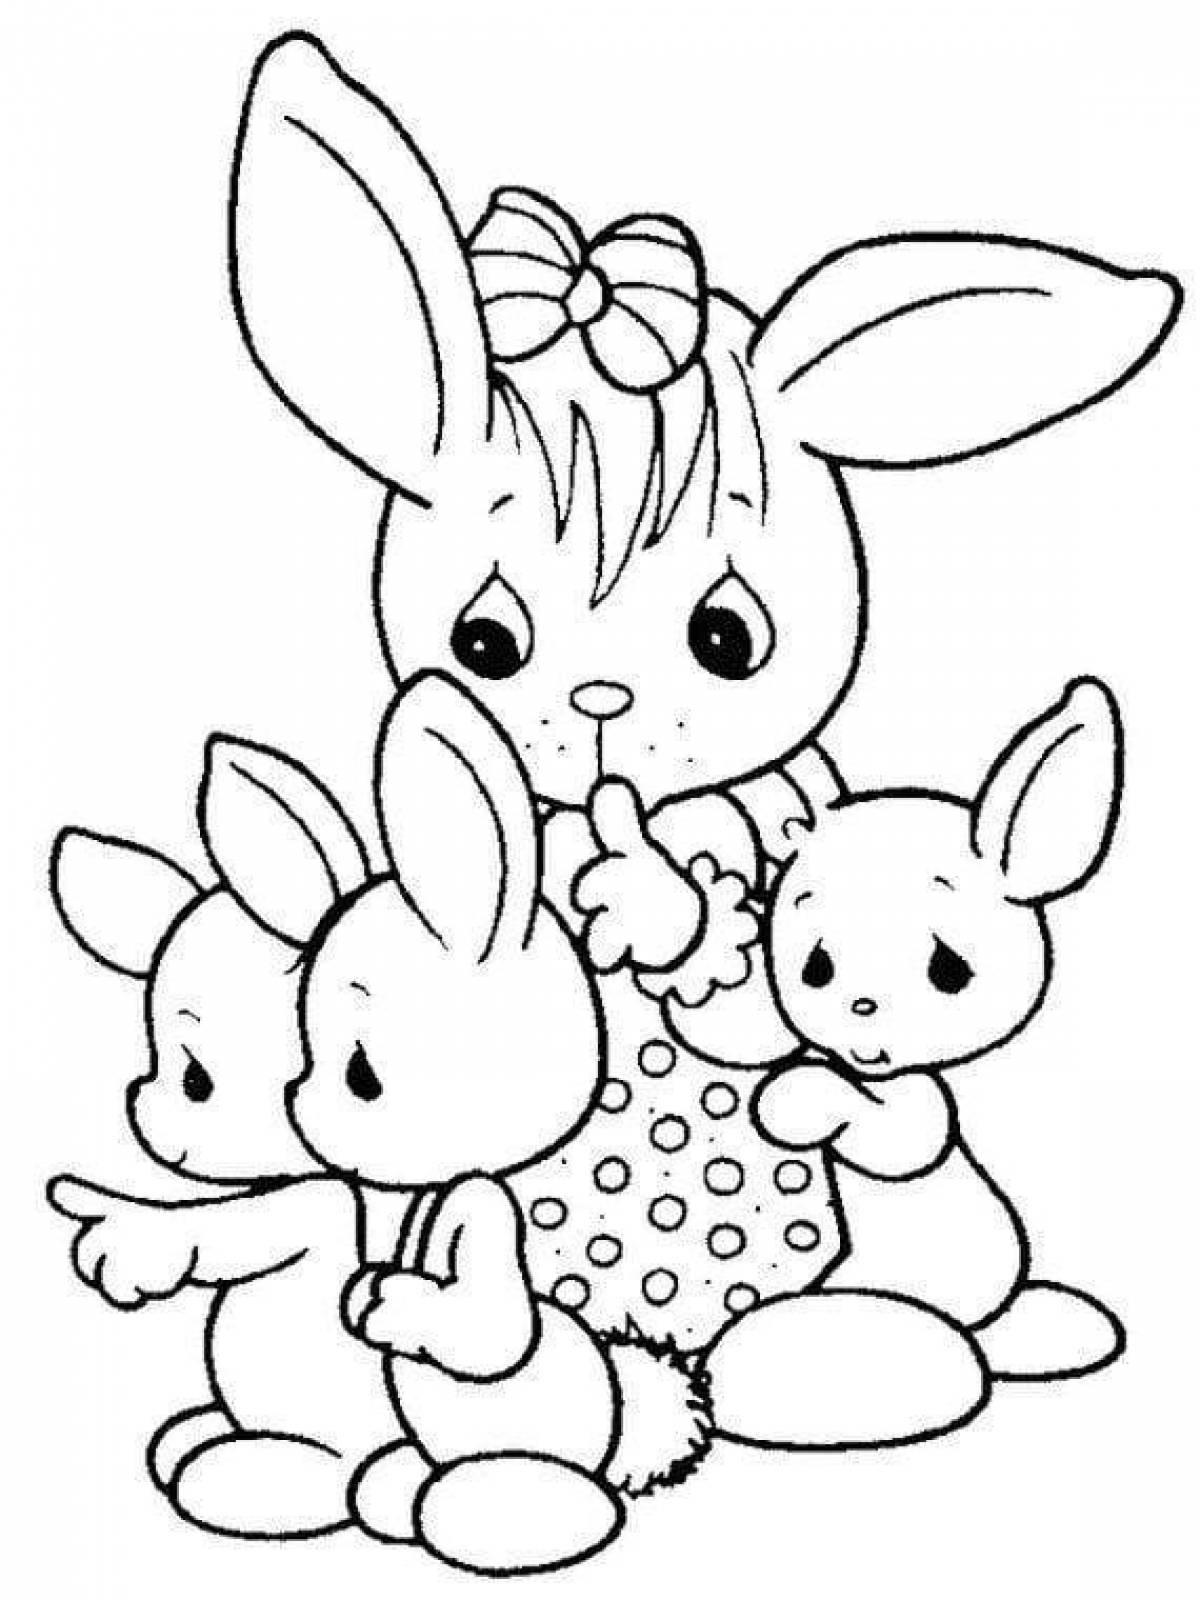 Раскраска занятый маленький кролик